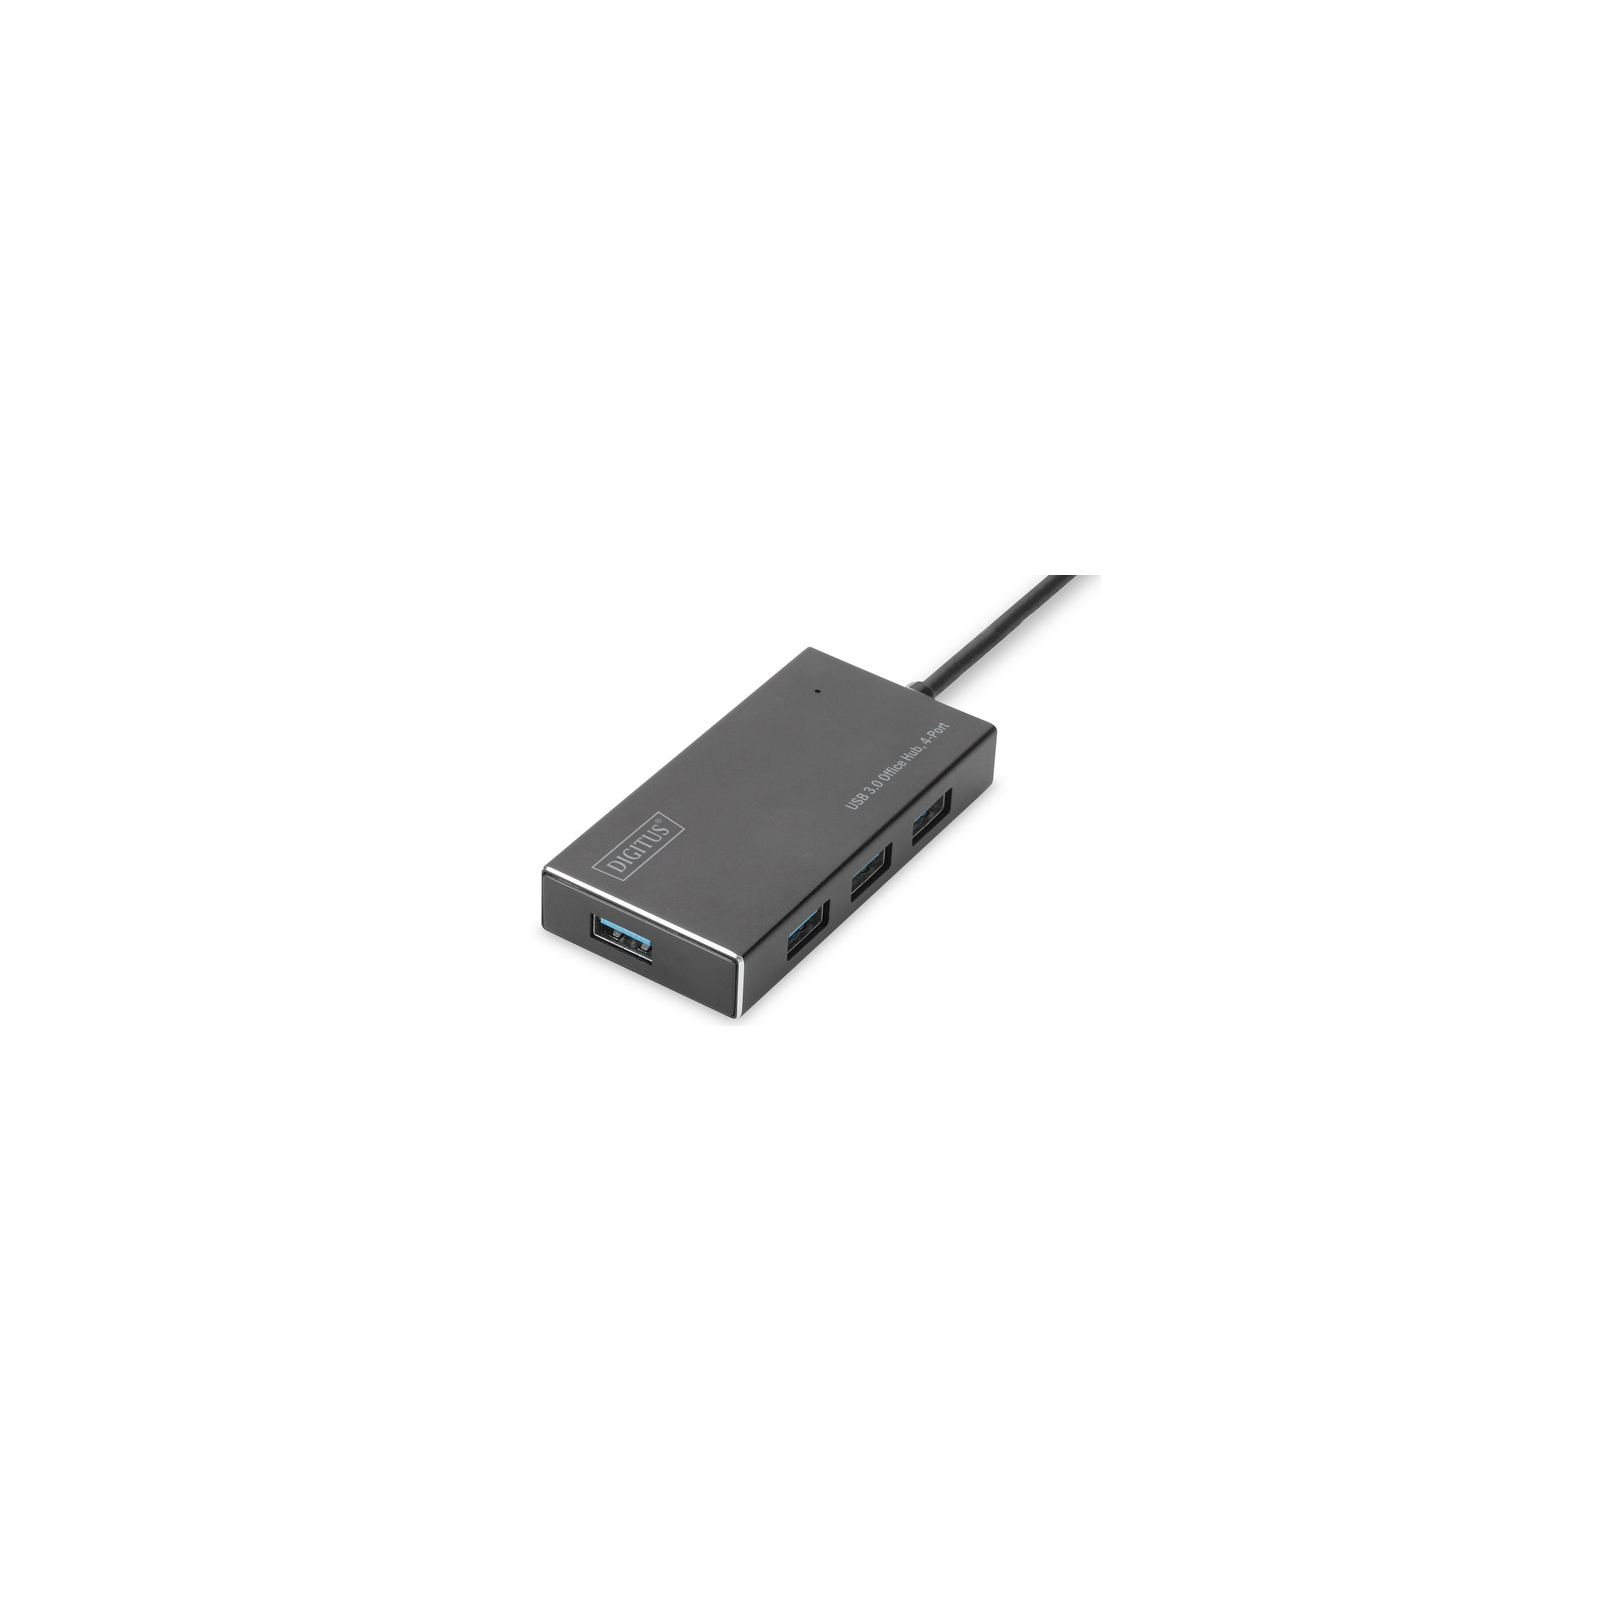 Концентратор Digitus USB 3.0 Hub, 4-port (DA-70240-1) изображение 2